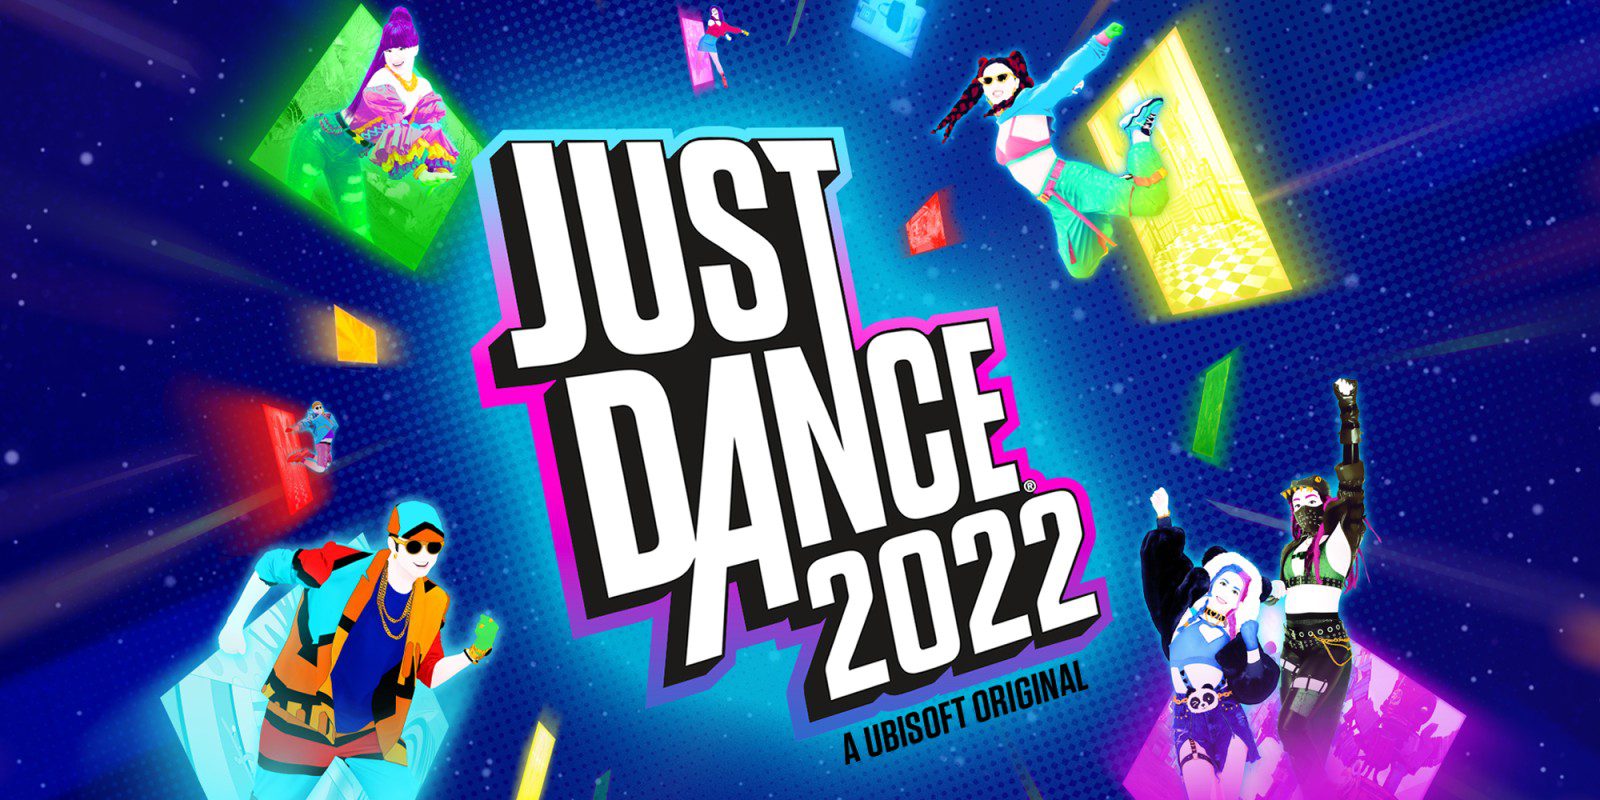 Análisis de Just Dance 2022 - Un año más, viene para saciar nuestras ganas de bailoteo. Perfecto para estas fiestas, analizamos Just Dance 2022.